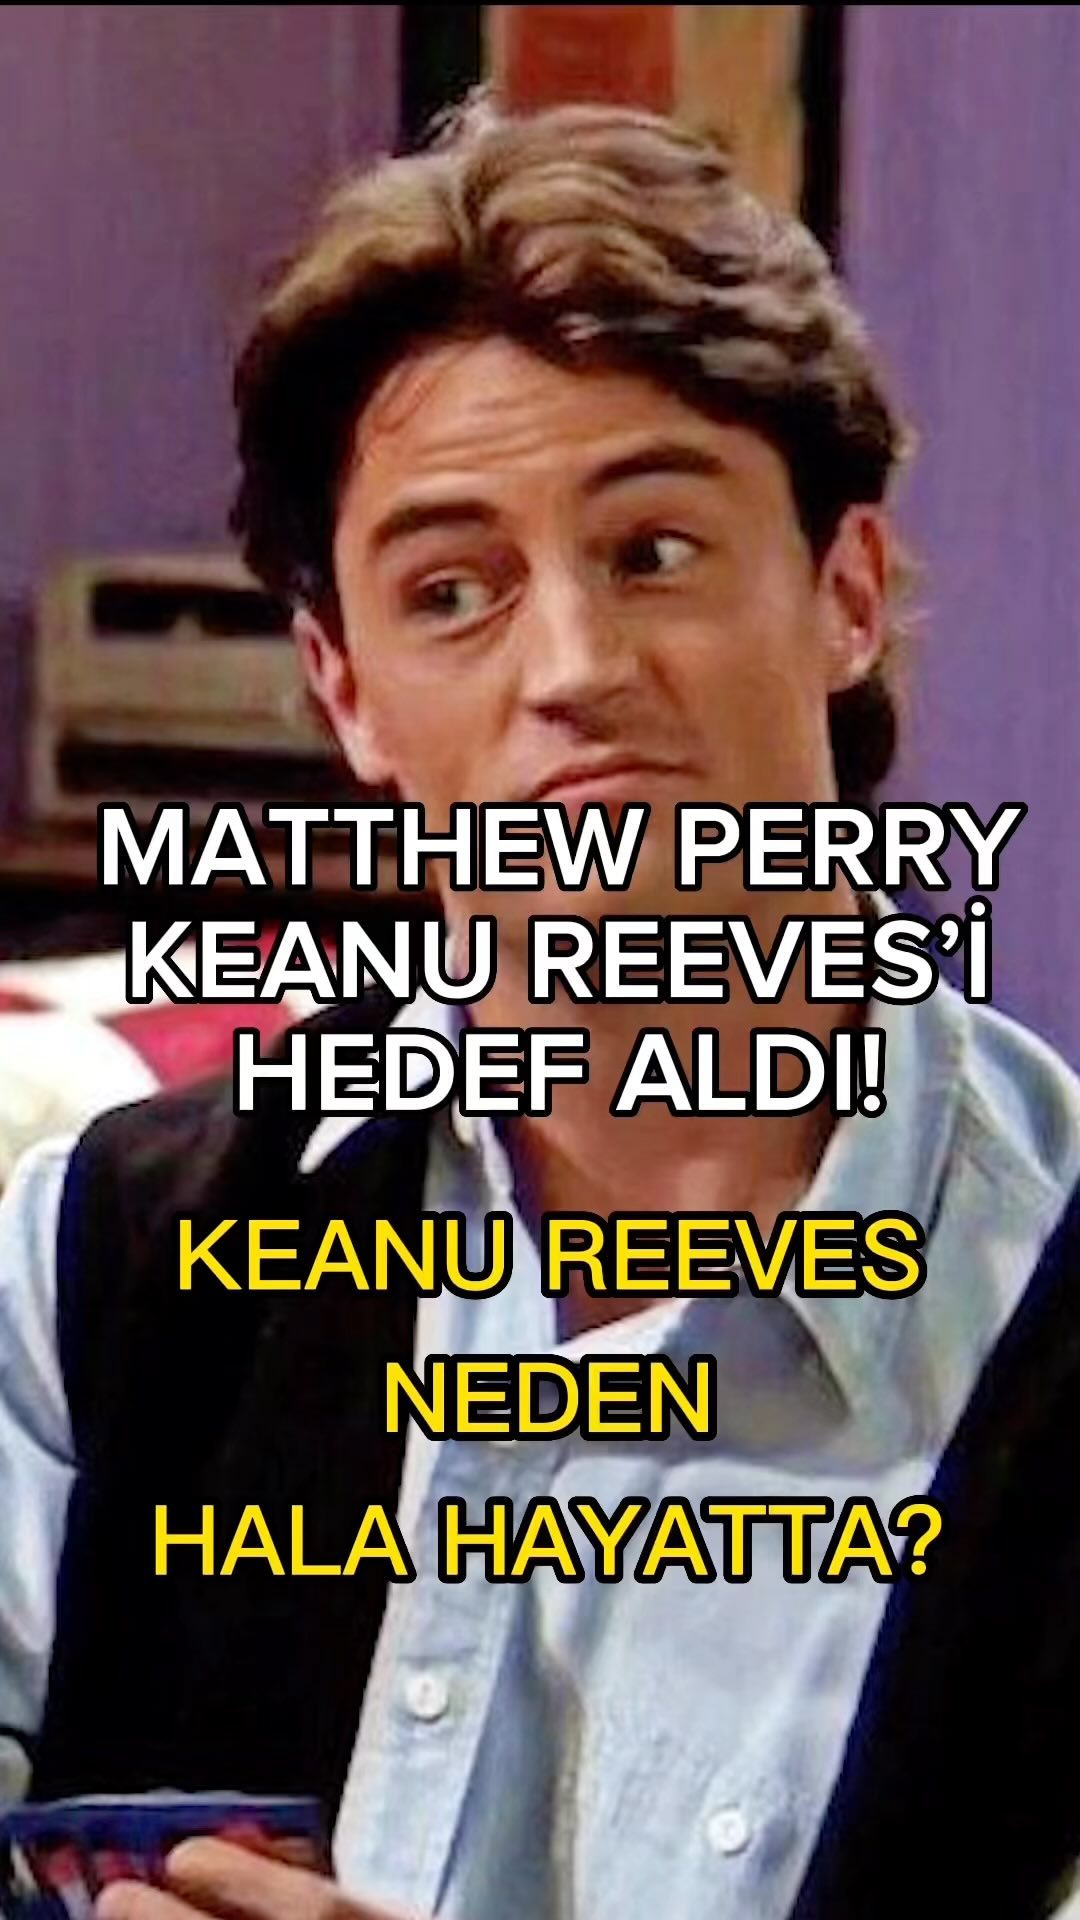 Friends’in Chandler’ı Matthew Perry’nin, geçtiğimiz hafta yayınlanan anı kitabında Keanu Reeves’i hedef alan sözleri tepki çekti!

#matthewperry #matthewperryedit #matthewperryofficial #matthewperryedits #keanureeves #keanureevesfan #keanureevesofficial #keanureevesedit #keanureevesfans #friends #friendsedit #friendsreunion #heathledger #heathledgerjoker #heathledgeredit #heathledgerfans #heathledgerforever #riverphoenix #riverphoenixedit #riverphoenixedits #riverphoenixforever